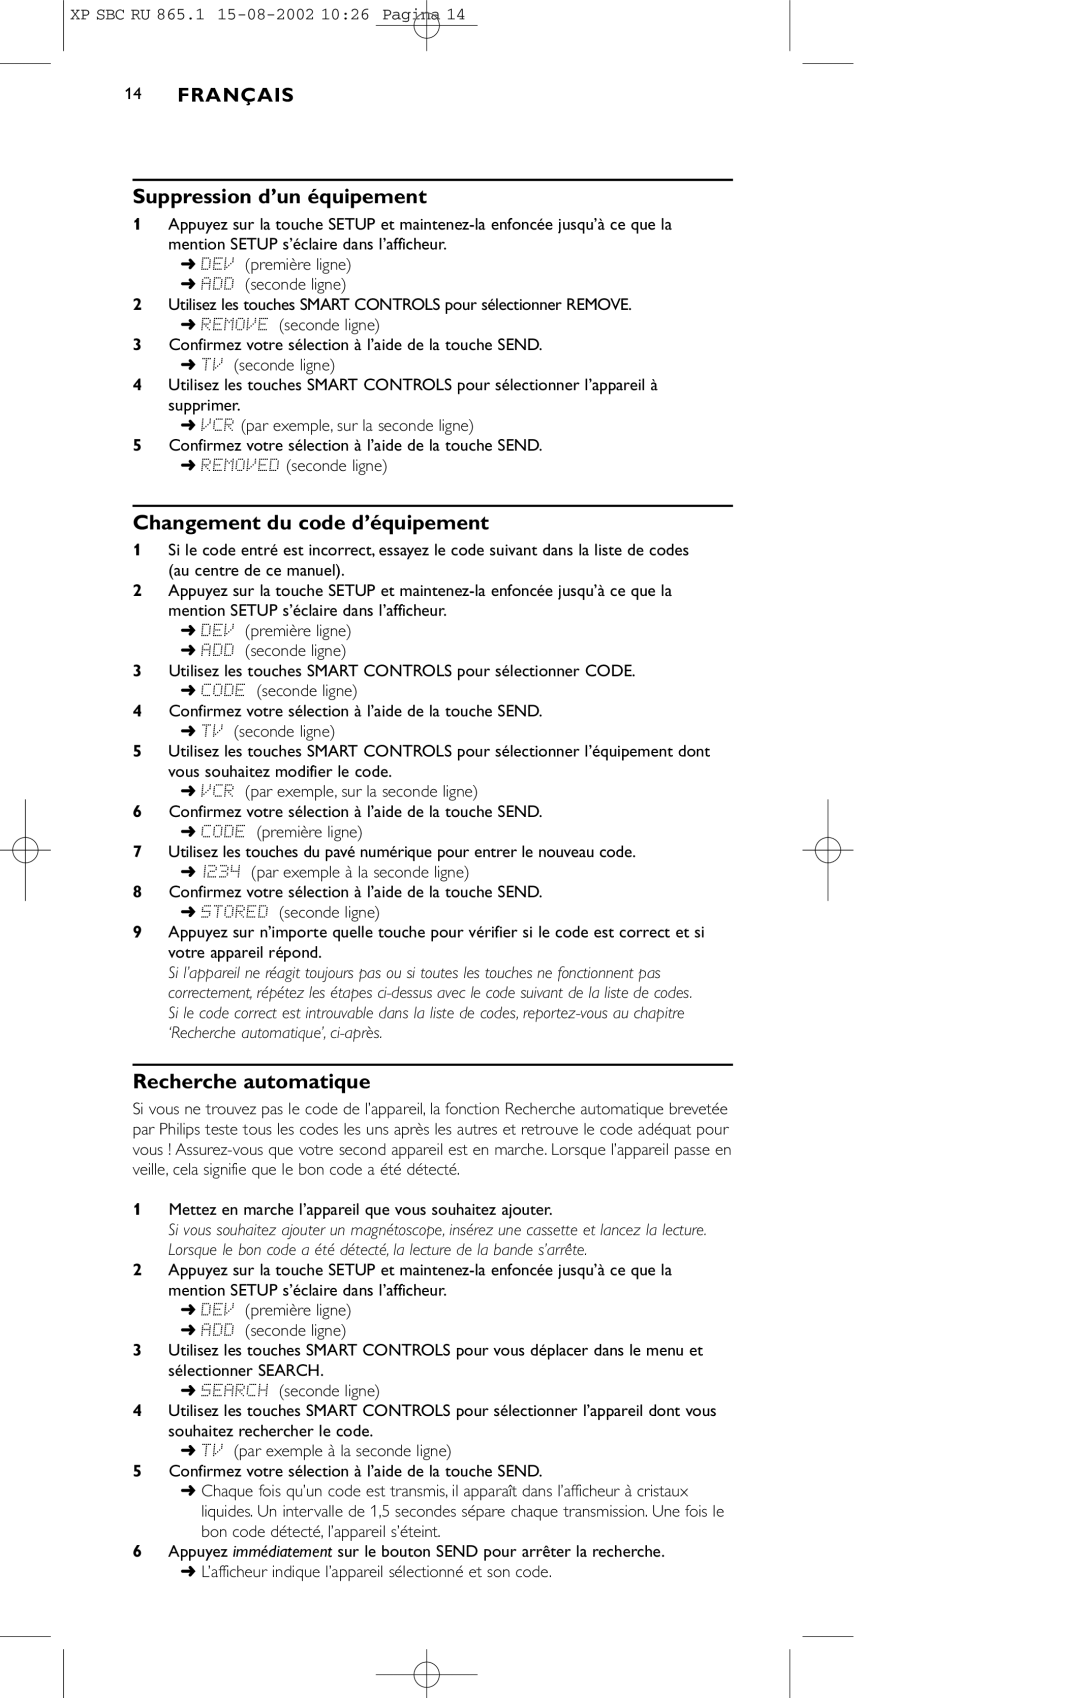 Philips SBC RU 865/00 manual Suppression d’un équipement, Changement du code d’équipement, Recherche automatique 